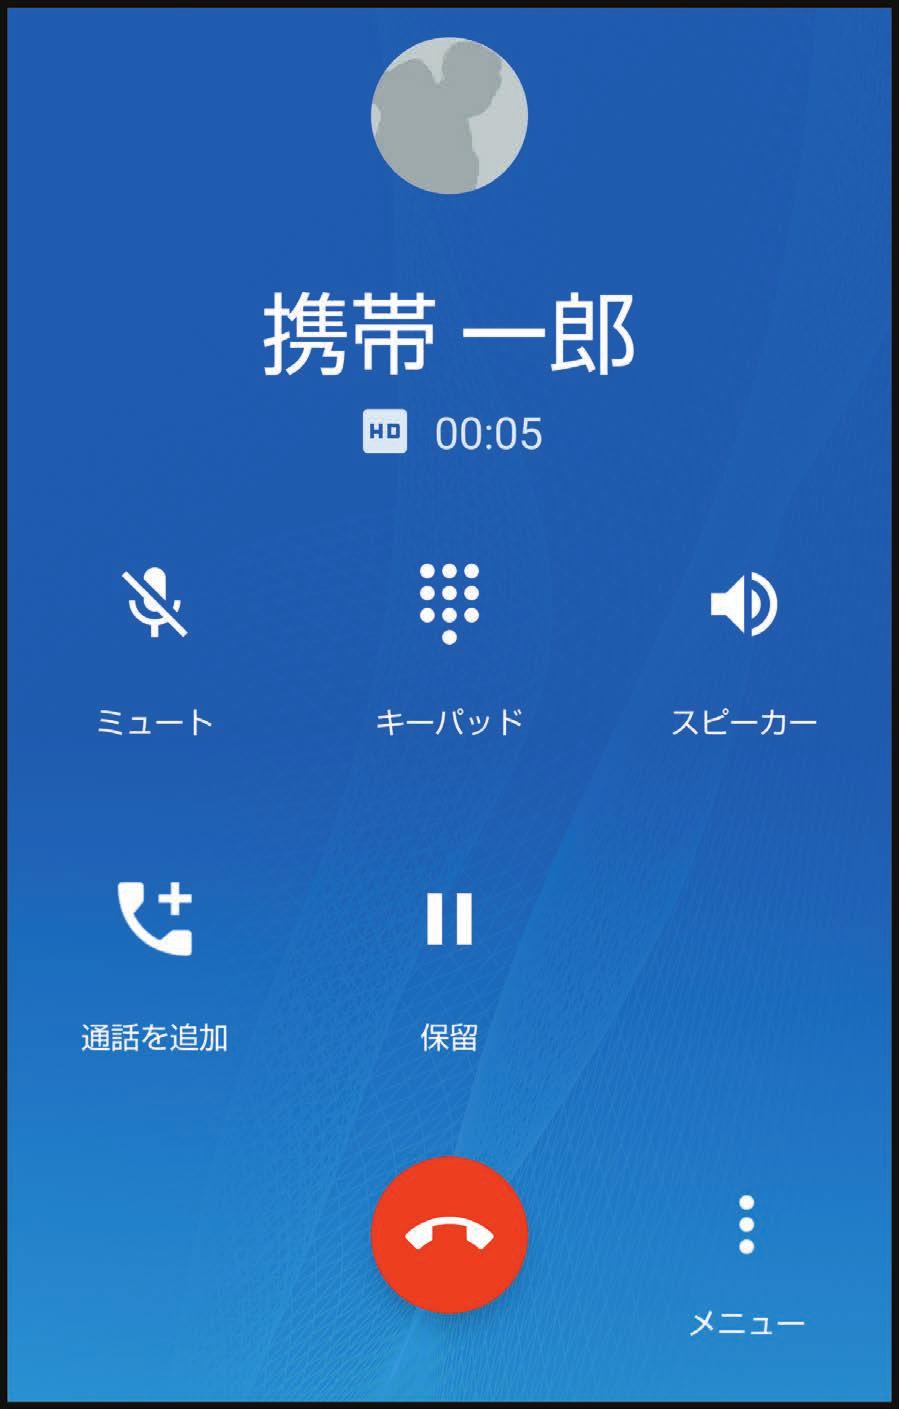 1-12) 電話 アプリ : 通話中画面